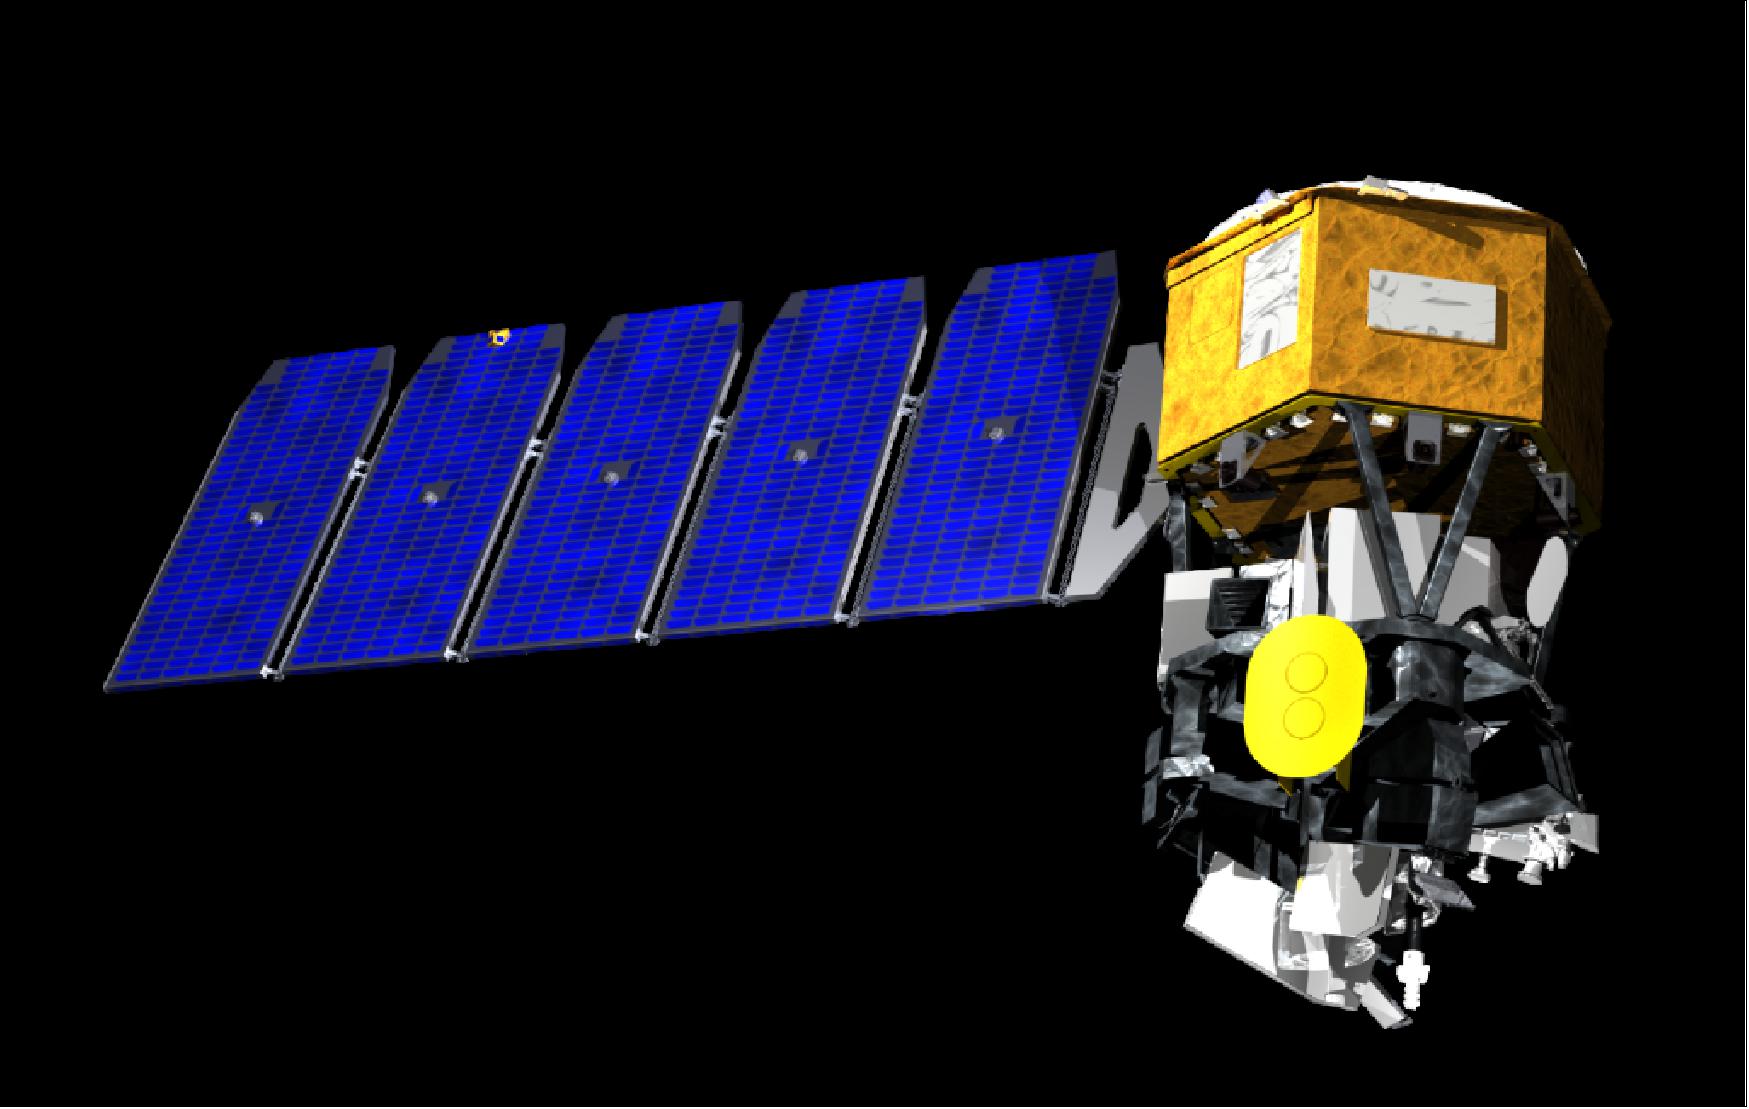 Figure 3: Illustration of the deployed ICON minisatellite (image credit: Oribital ATK)